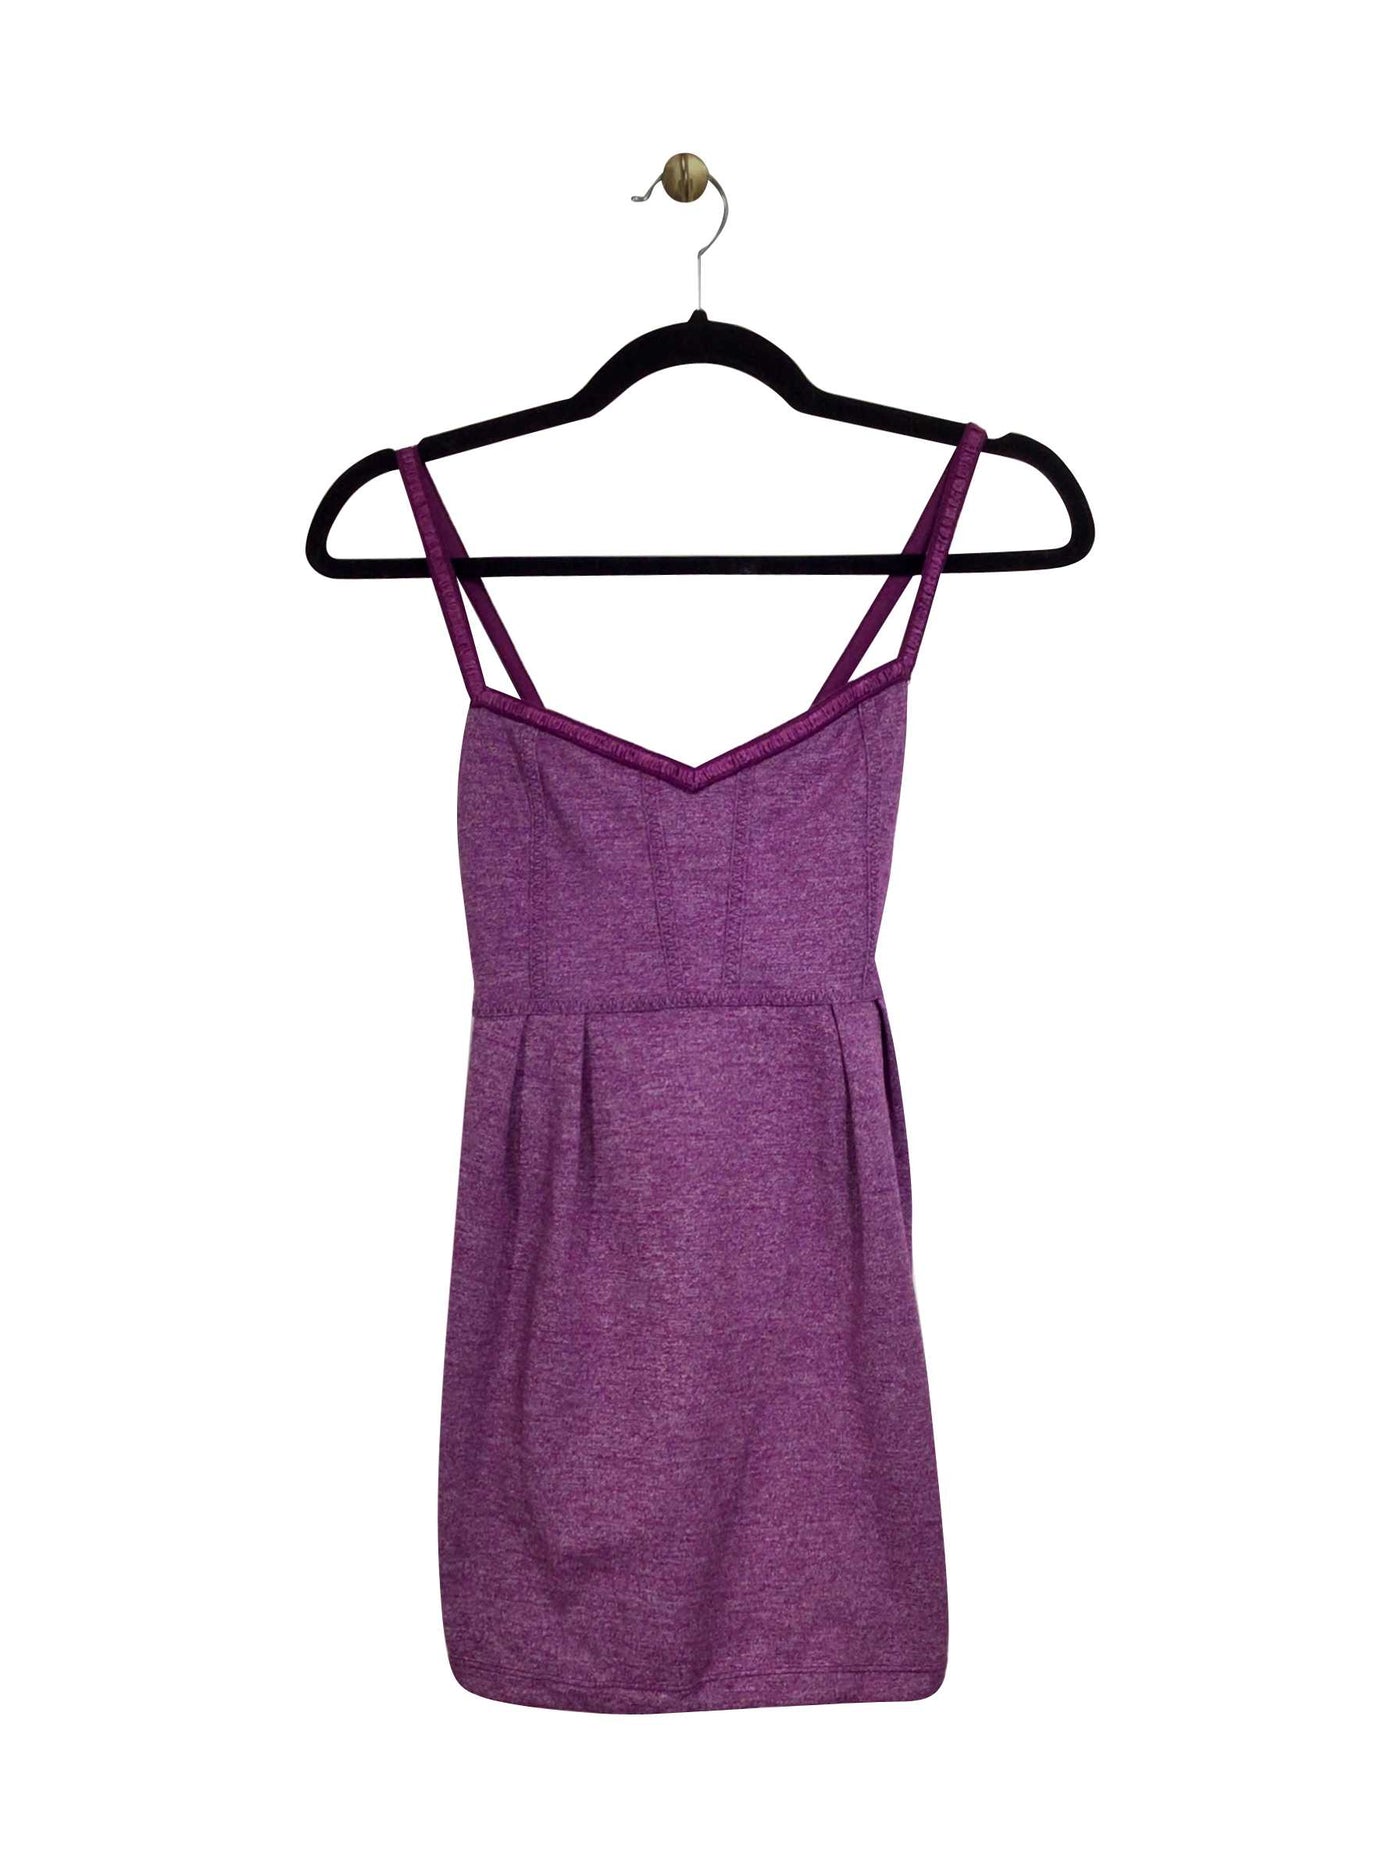 LULULEMON Regular fit Activewear Top in Purple - Size S | 21.99 $ KOOP